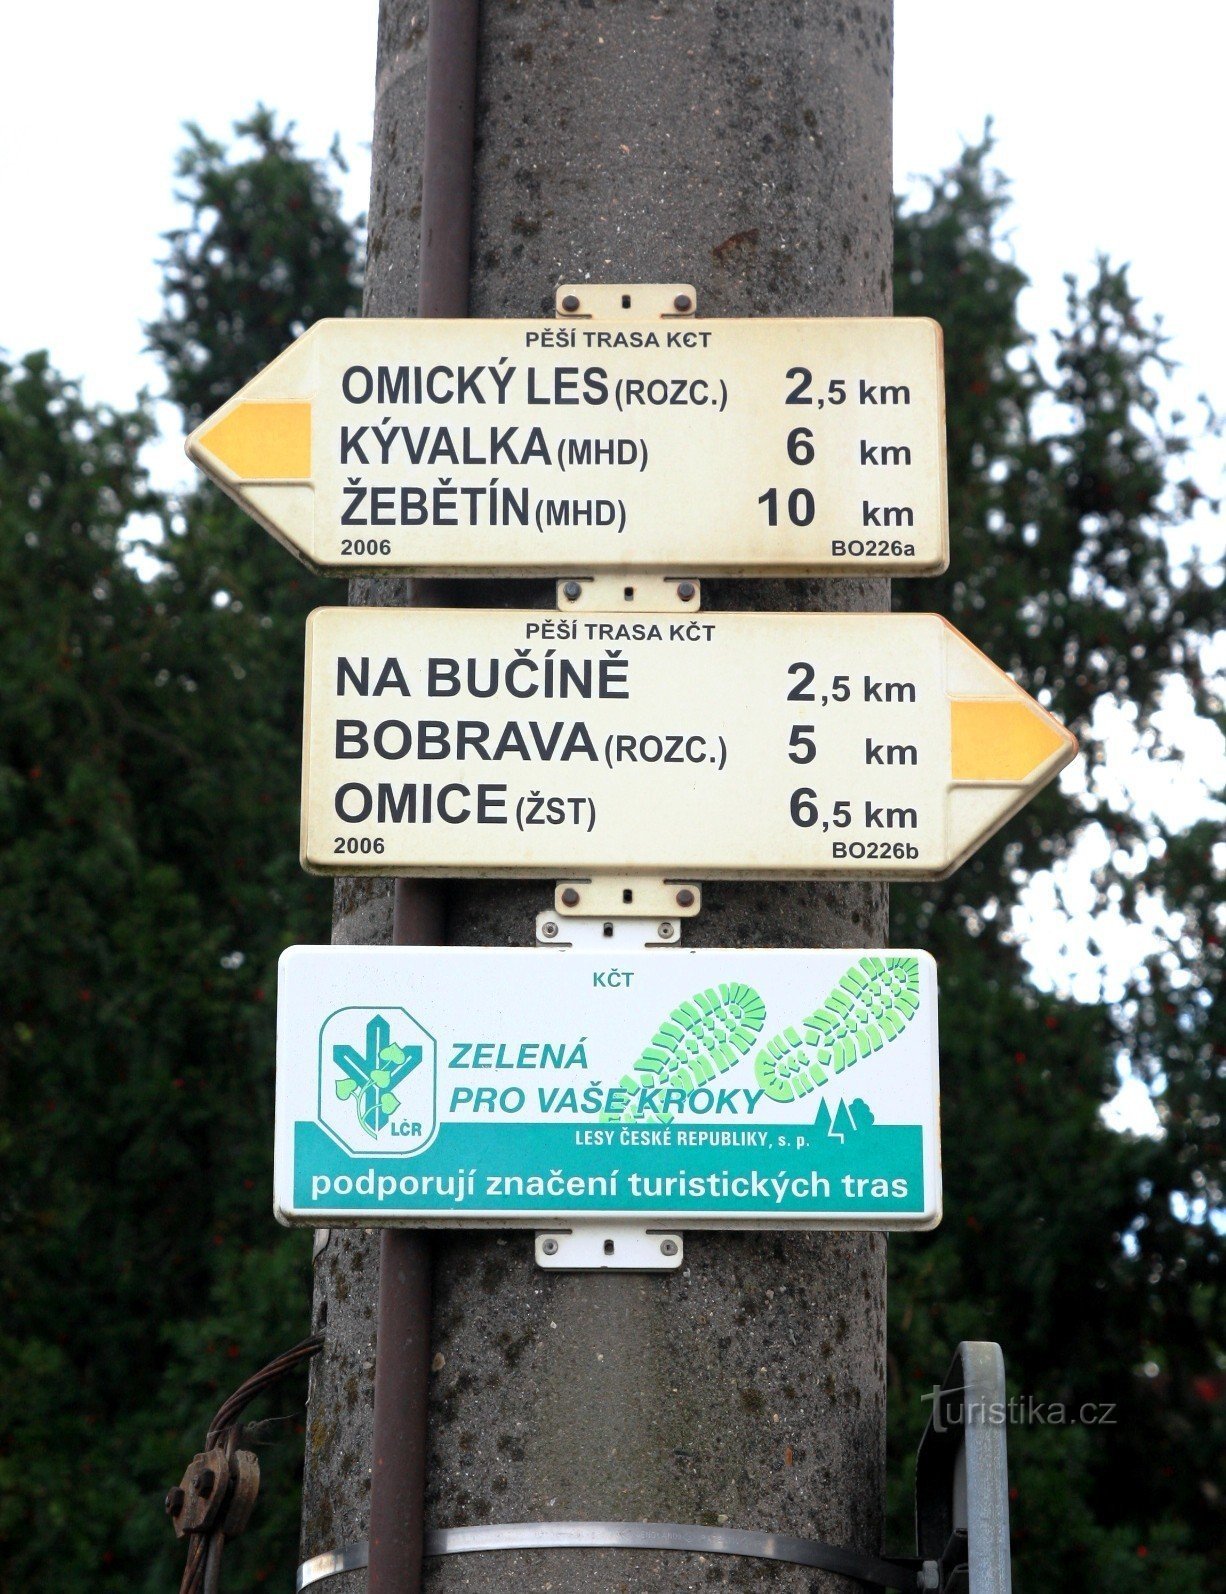 Tetčice tourist crossroads